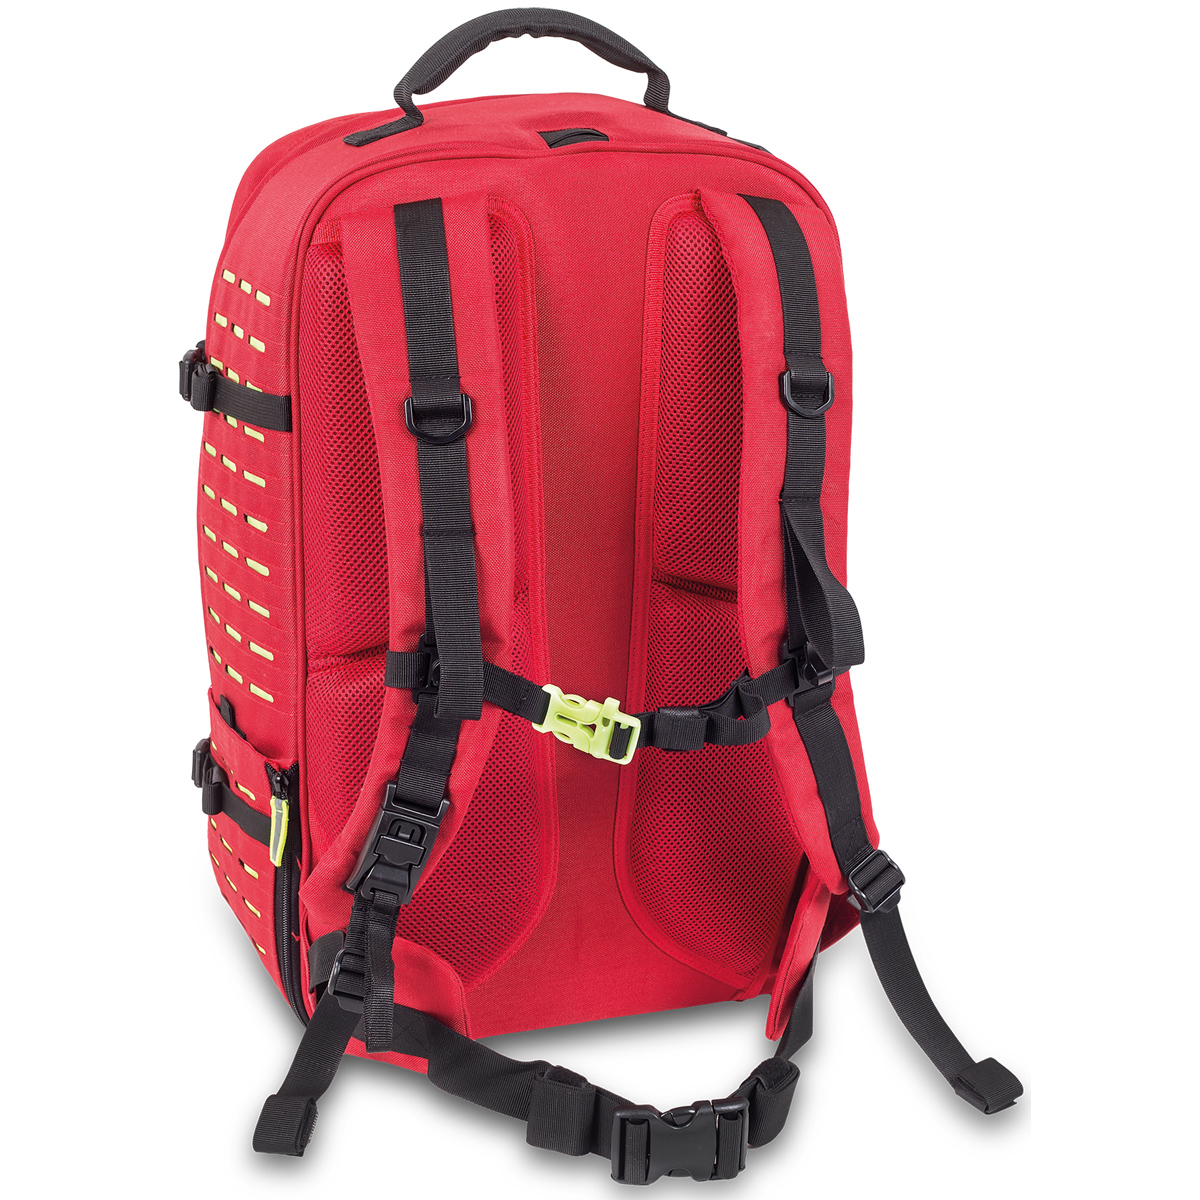 Elite Bags ROBUST'S Notfallrucksack - Großer Notfallrucksack für umfangreiche Ausstattung mit MOLLE-System zur individuellen Erweiterung. 32 x 55 x 28 cm.